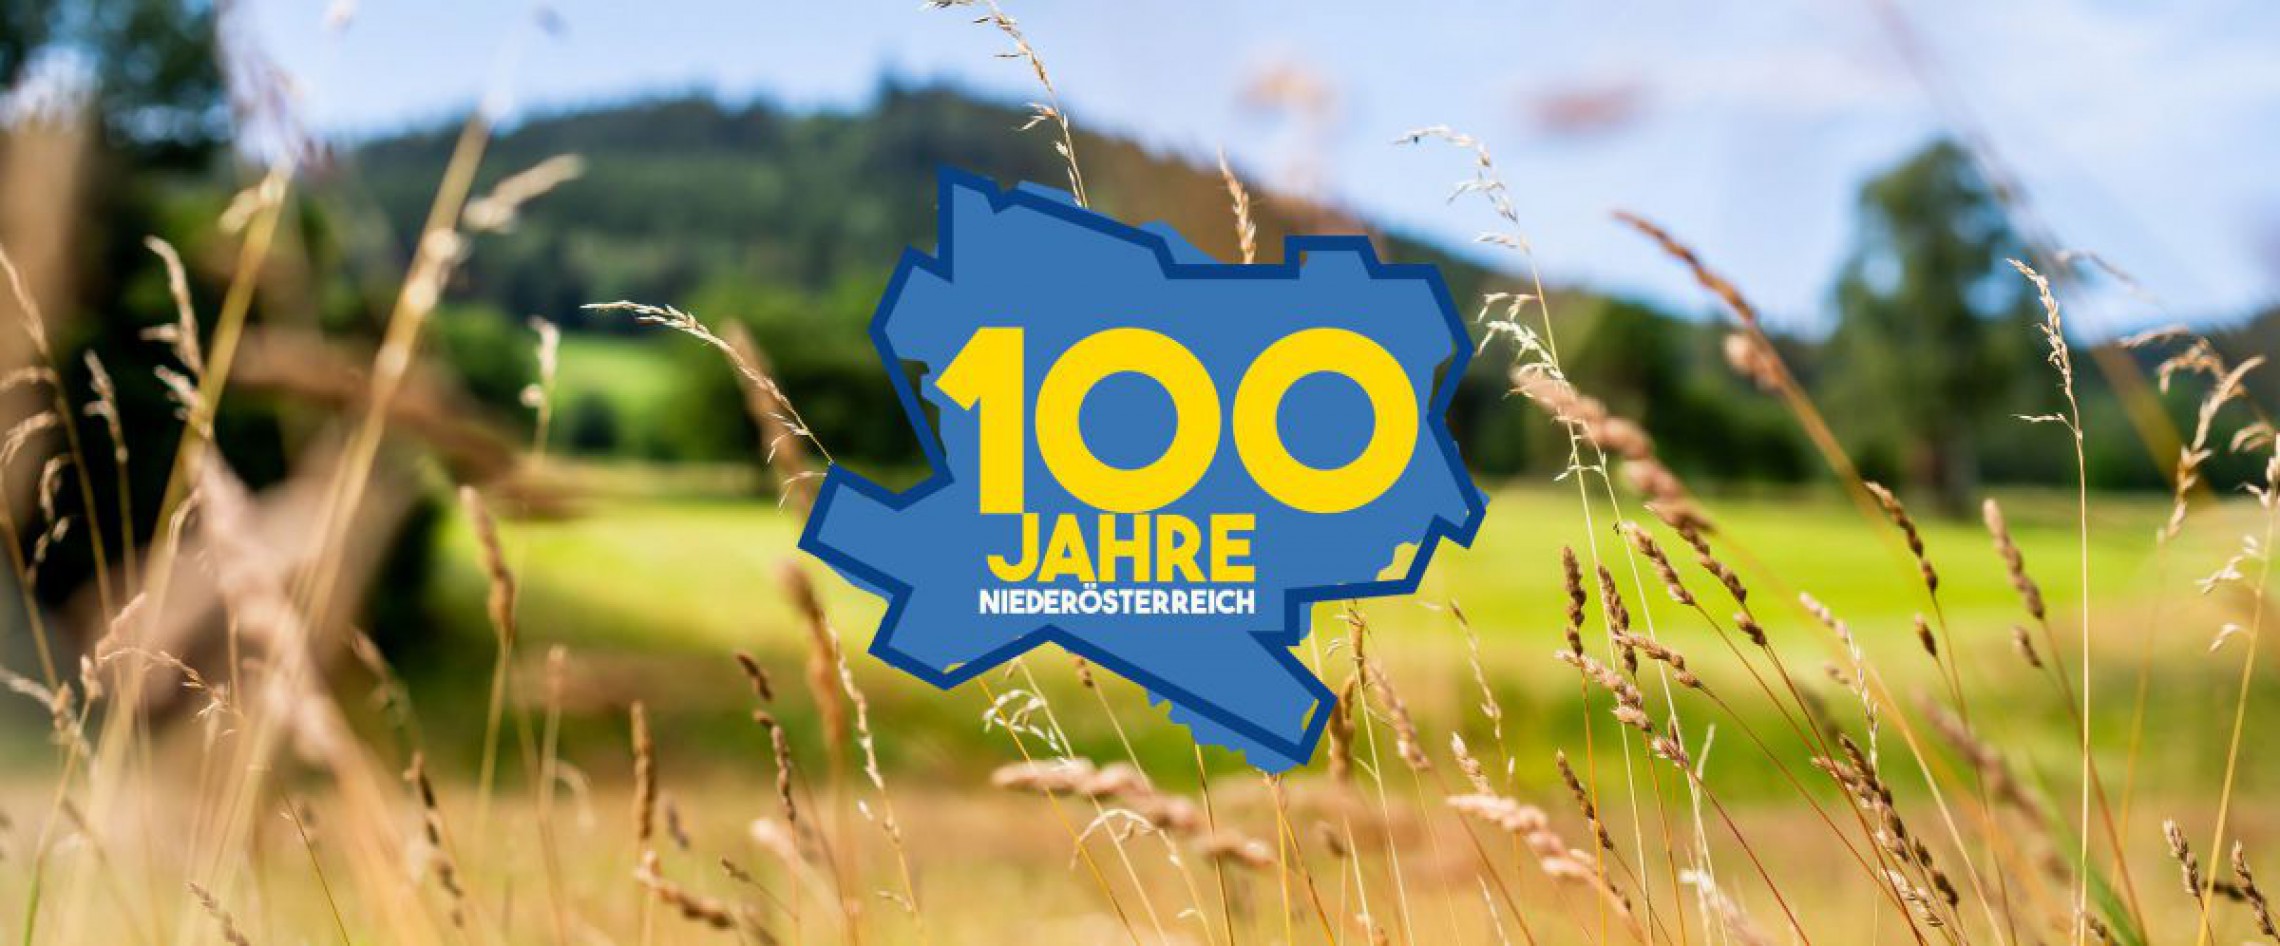 Landschaftsbild mit dem Logo 100 Jahre NÖ darauf